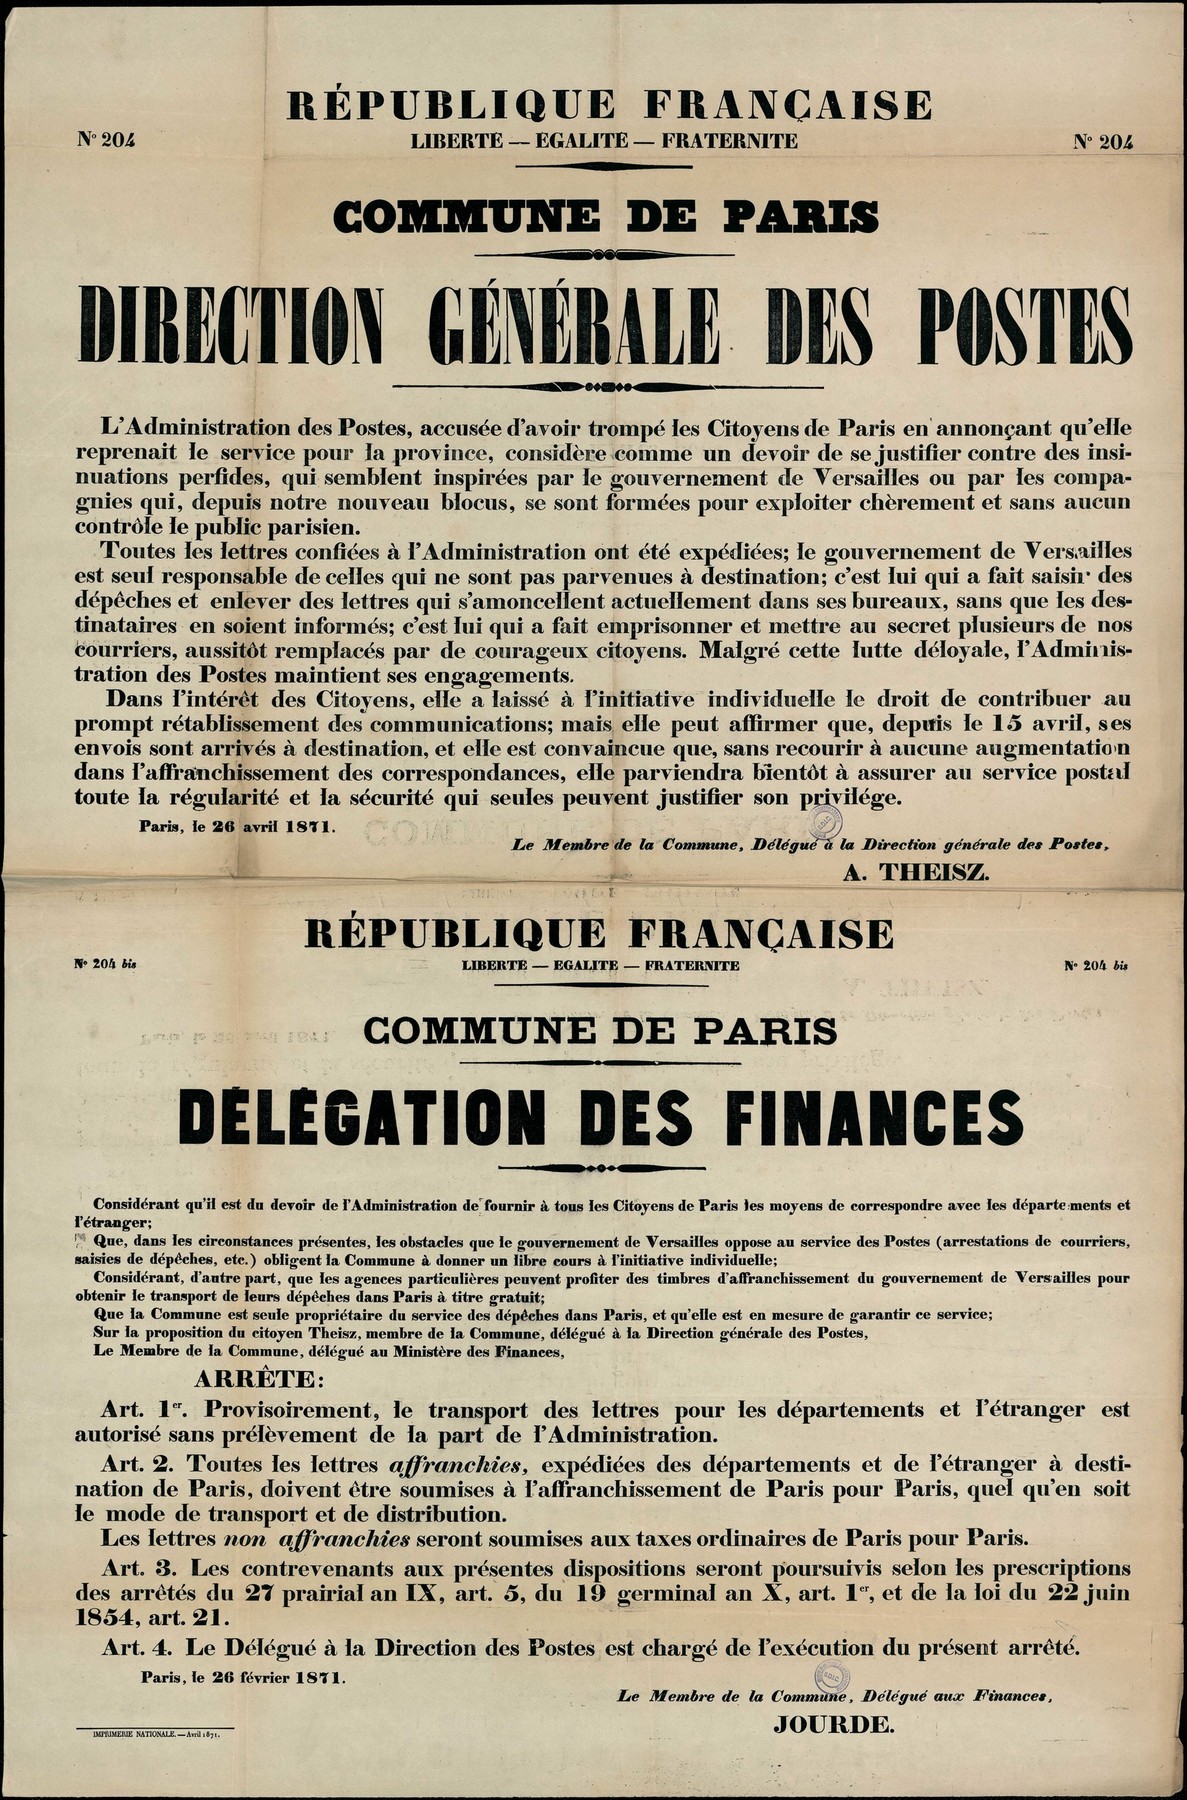 Affiche de la Commune de Paris N° 204 et 204 bis du 26 avril 1871 signée l'une par Theisz et l'autre par Jourde